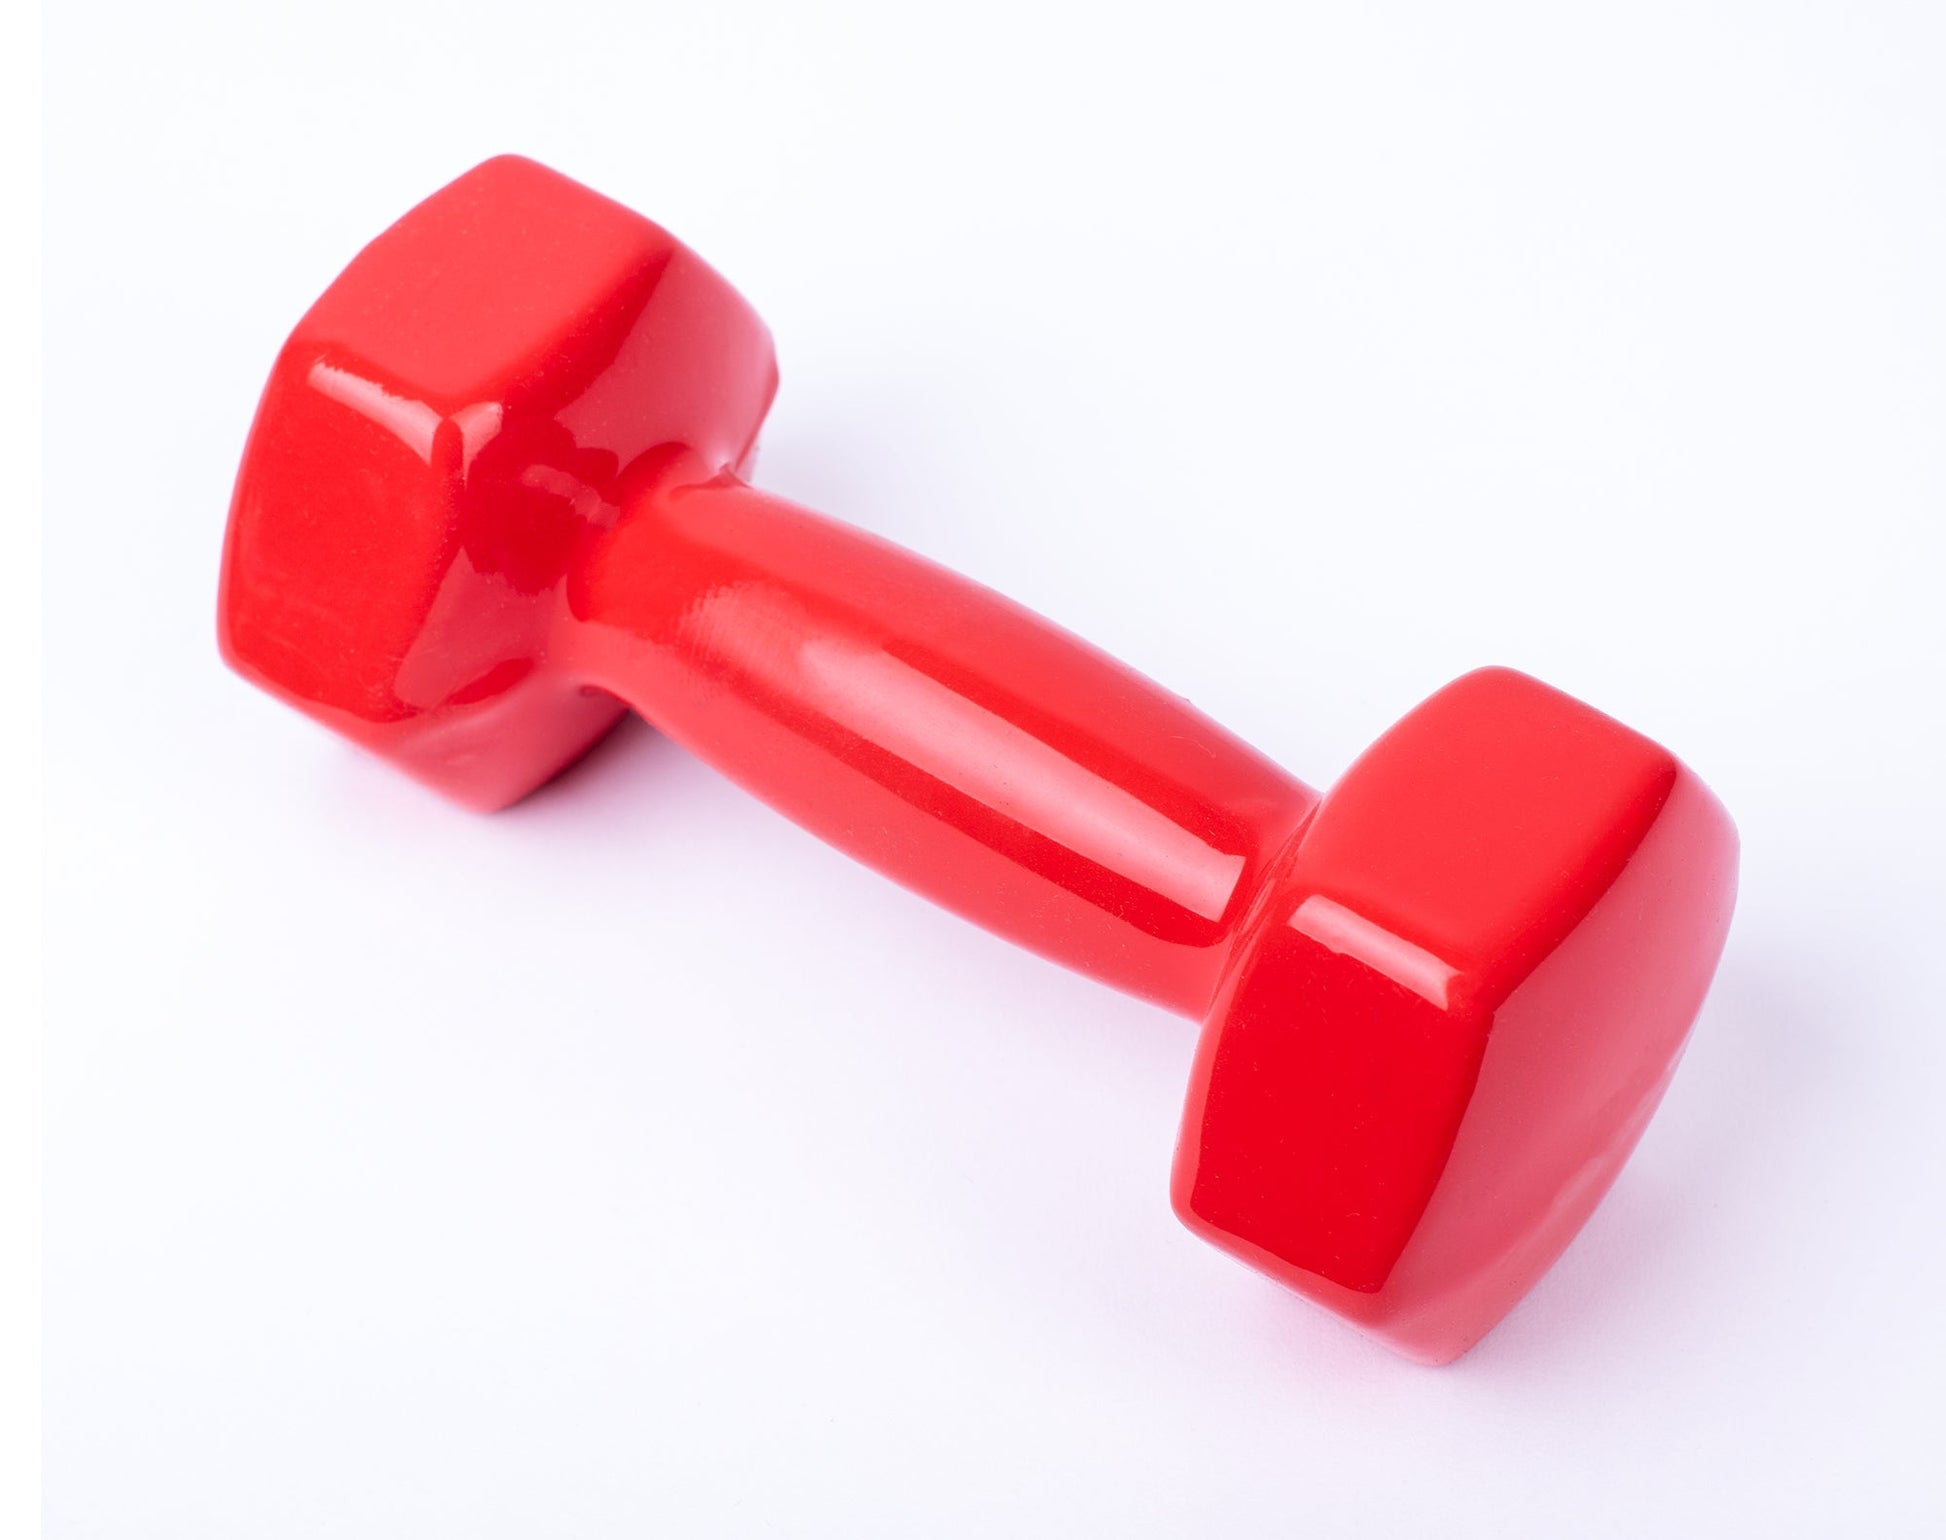 دامبل حديد للتمارين الرياضية بطبقة من الفينيل - لون احمر - قطعة واحدة - وزن 5 كيلو - Kanteen - كانتين